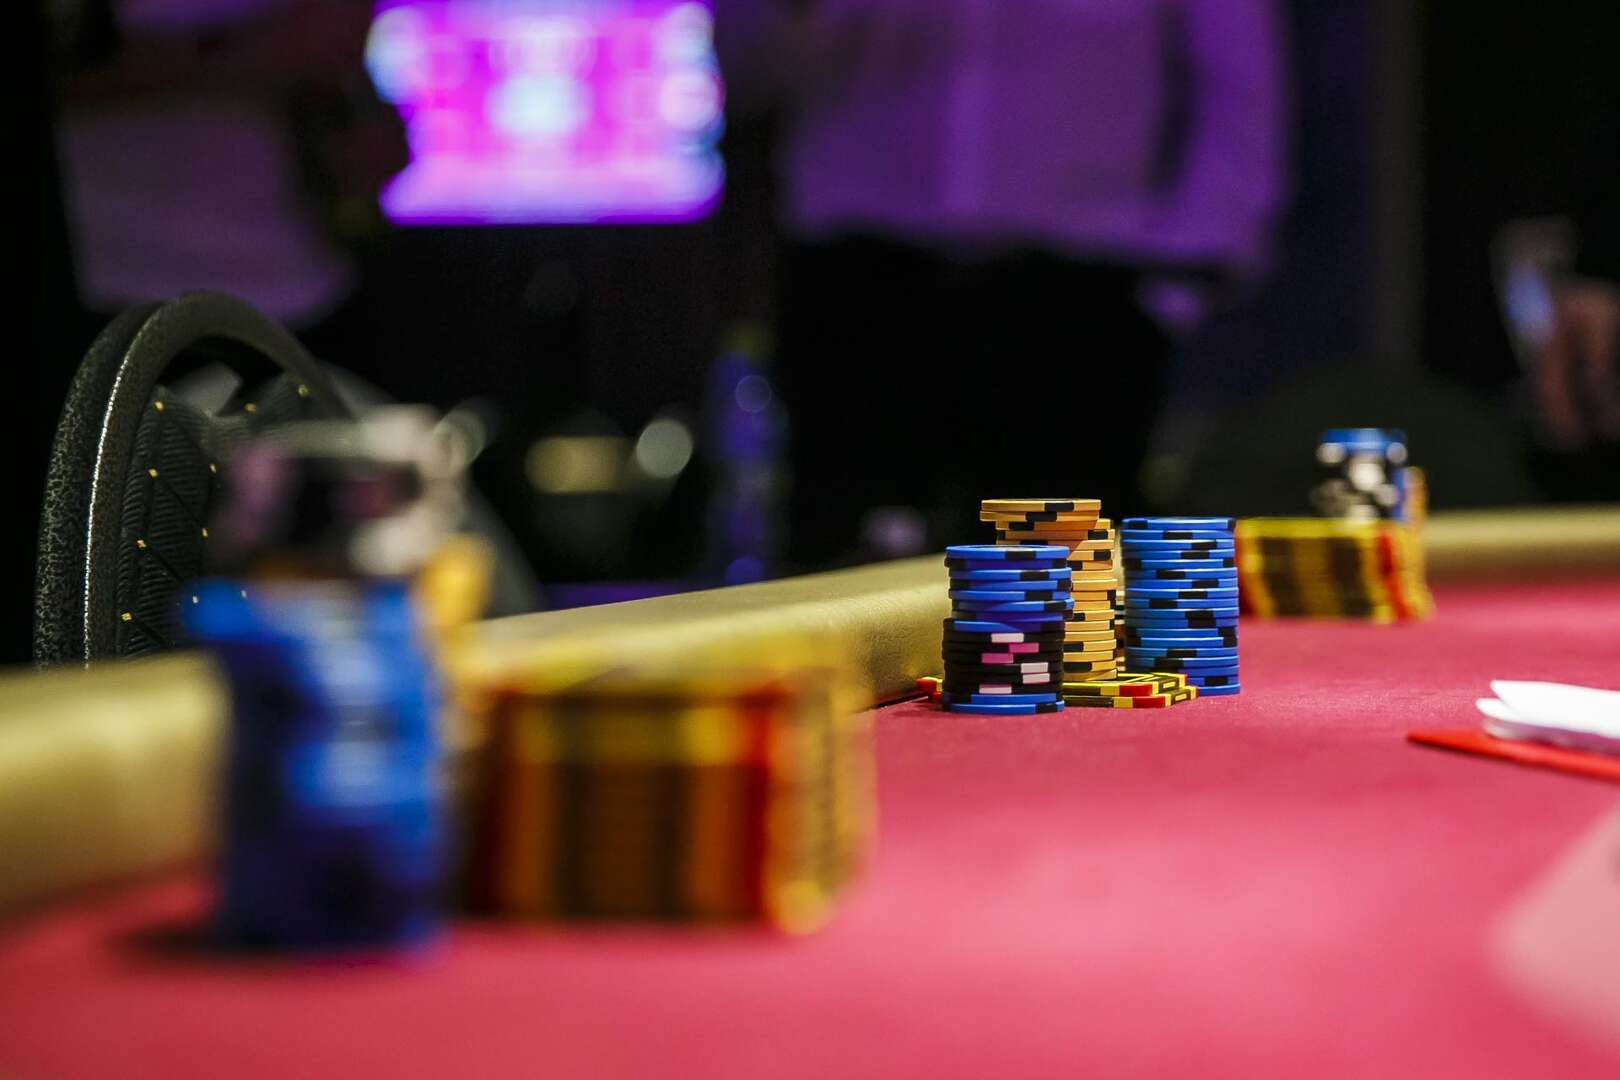 40 000 €! A zólyomi Rebuy Stars kaszinó pókerversenyei legalább ennyit ígérnek augusztusban